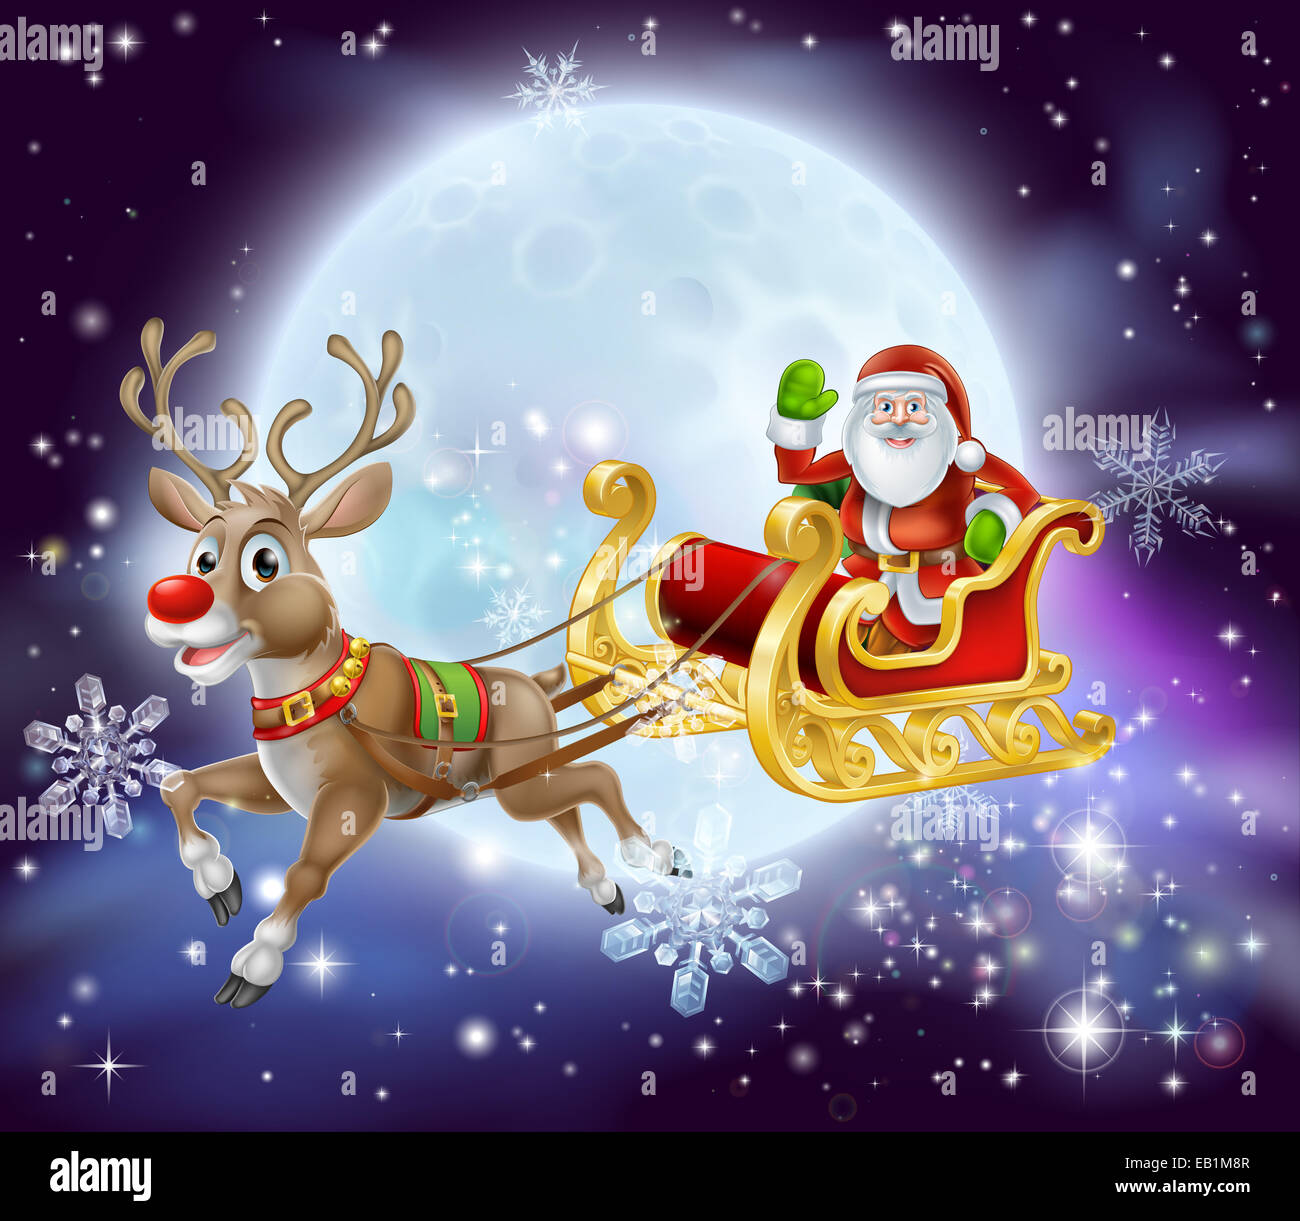 Ilustración de dibujos animados de navidad de Papá Noel en su trineo o sled  volando en frente de una gran luna llena Fotografía de stock - Alamy